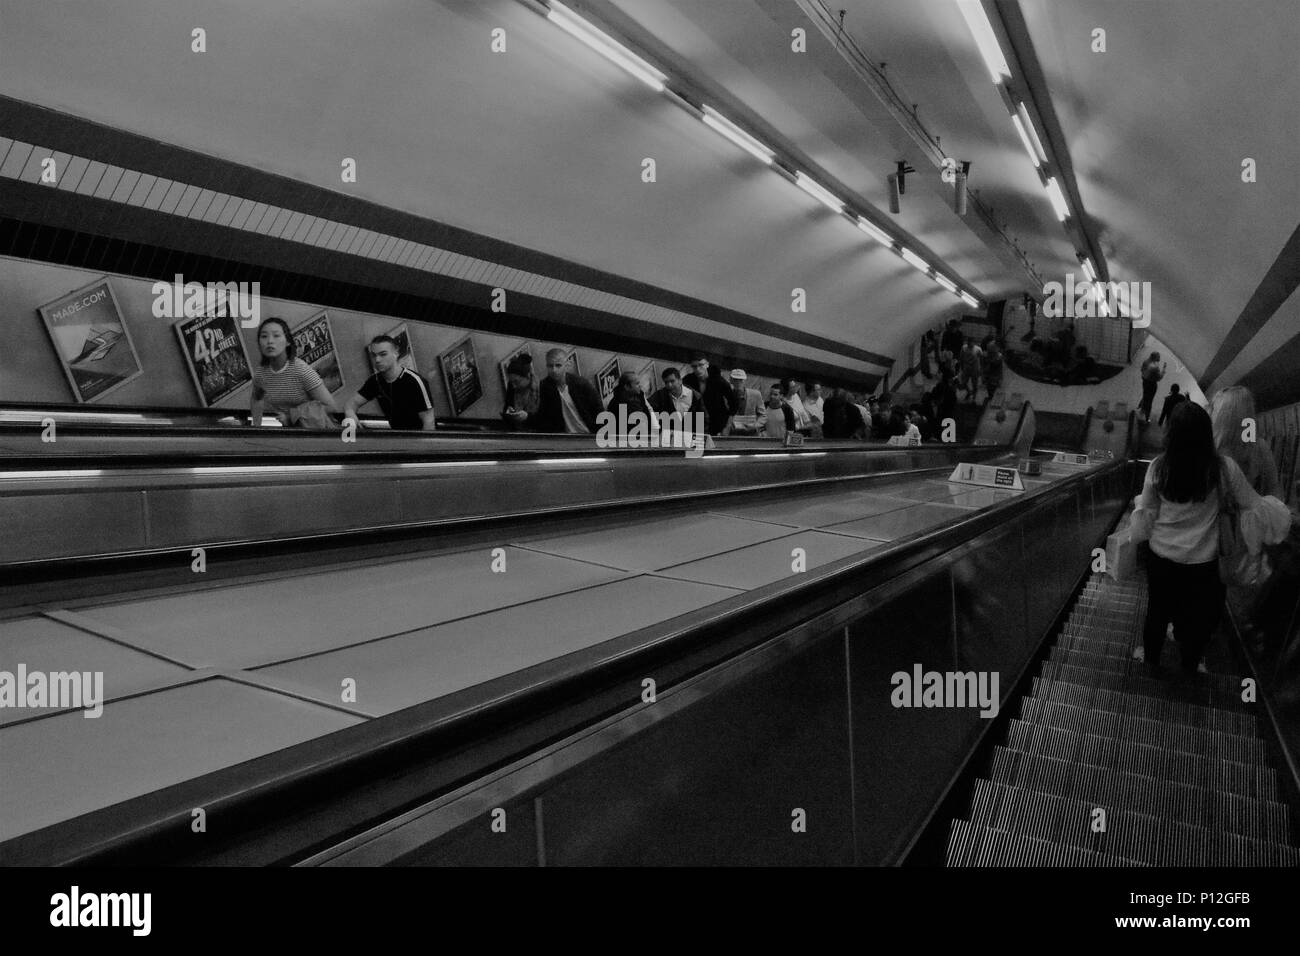 Immagine in bianco e nero di persone sulle scale mobili in metropolitana di Londra, Regno Unito - Concetto / storia immagine Foto Stock